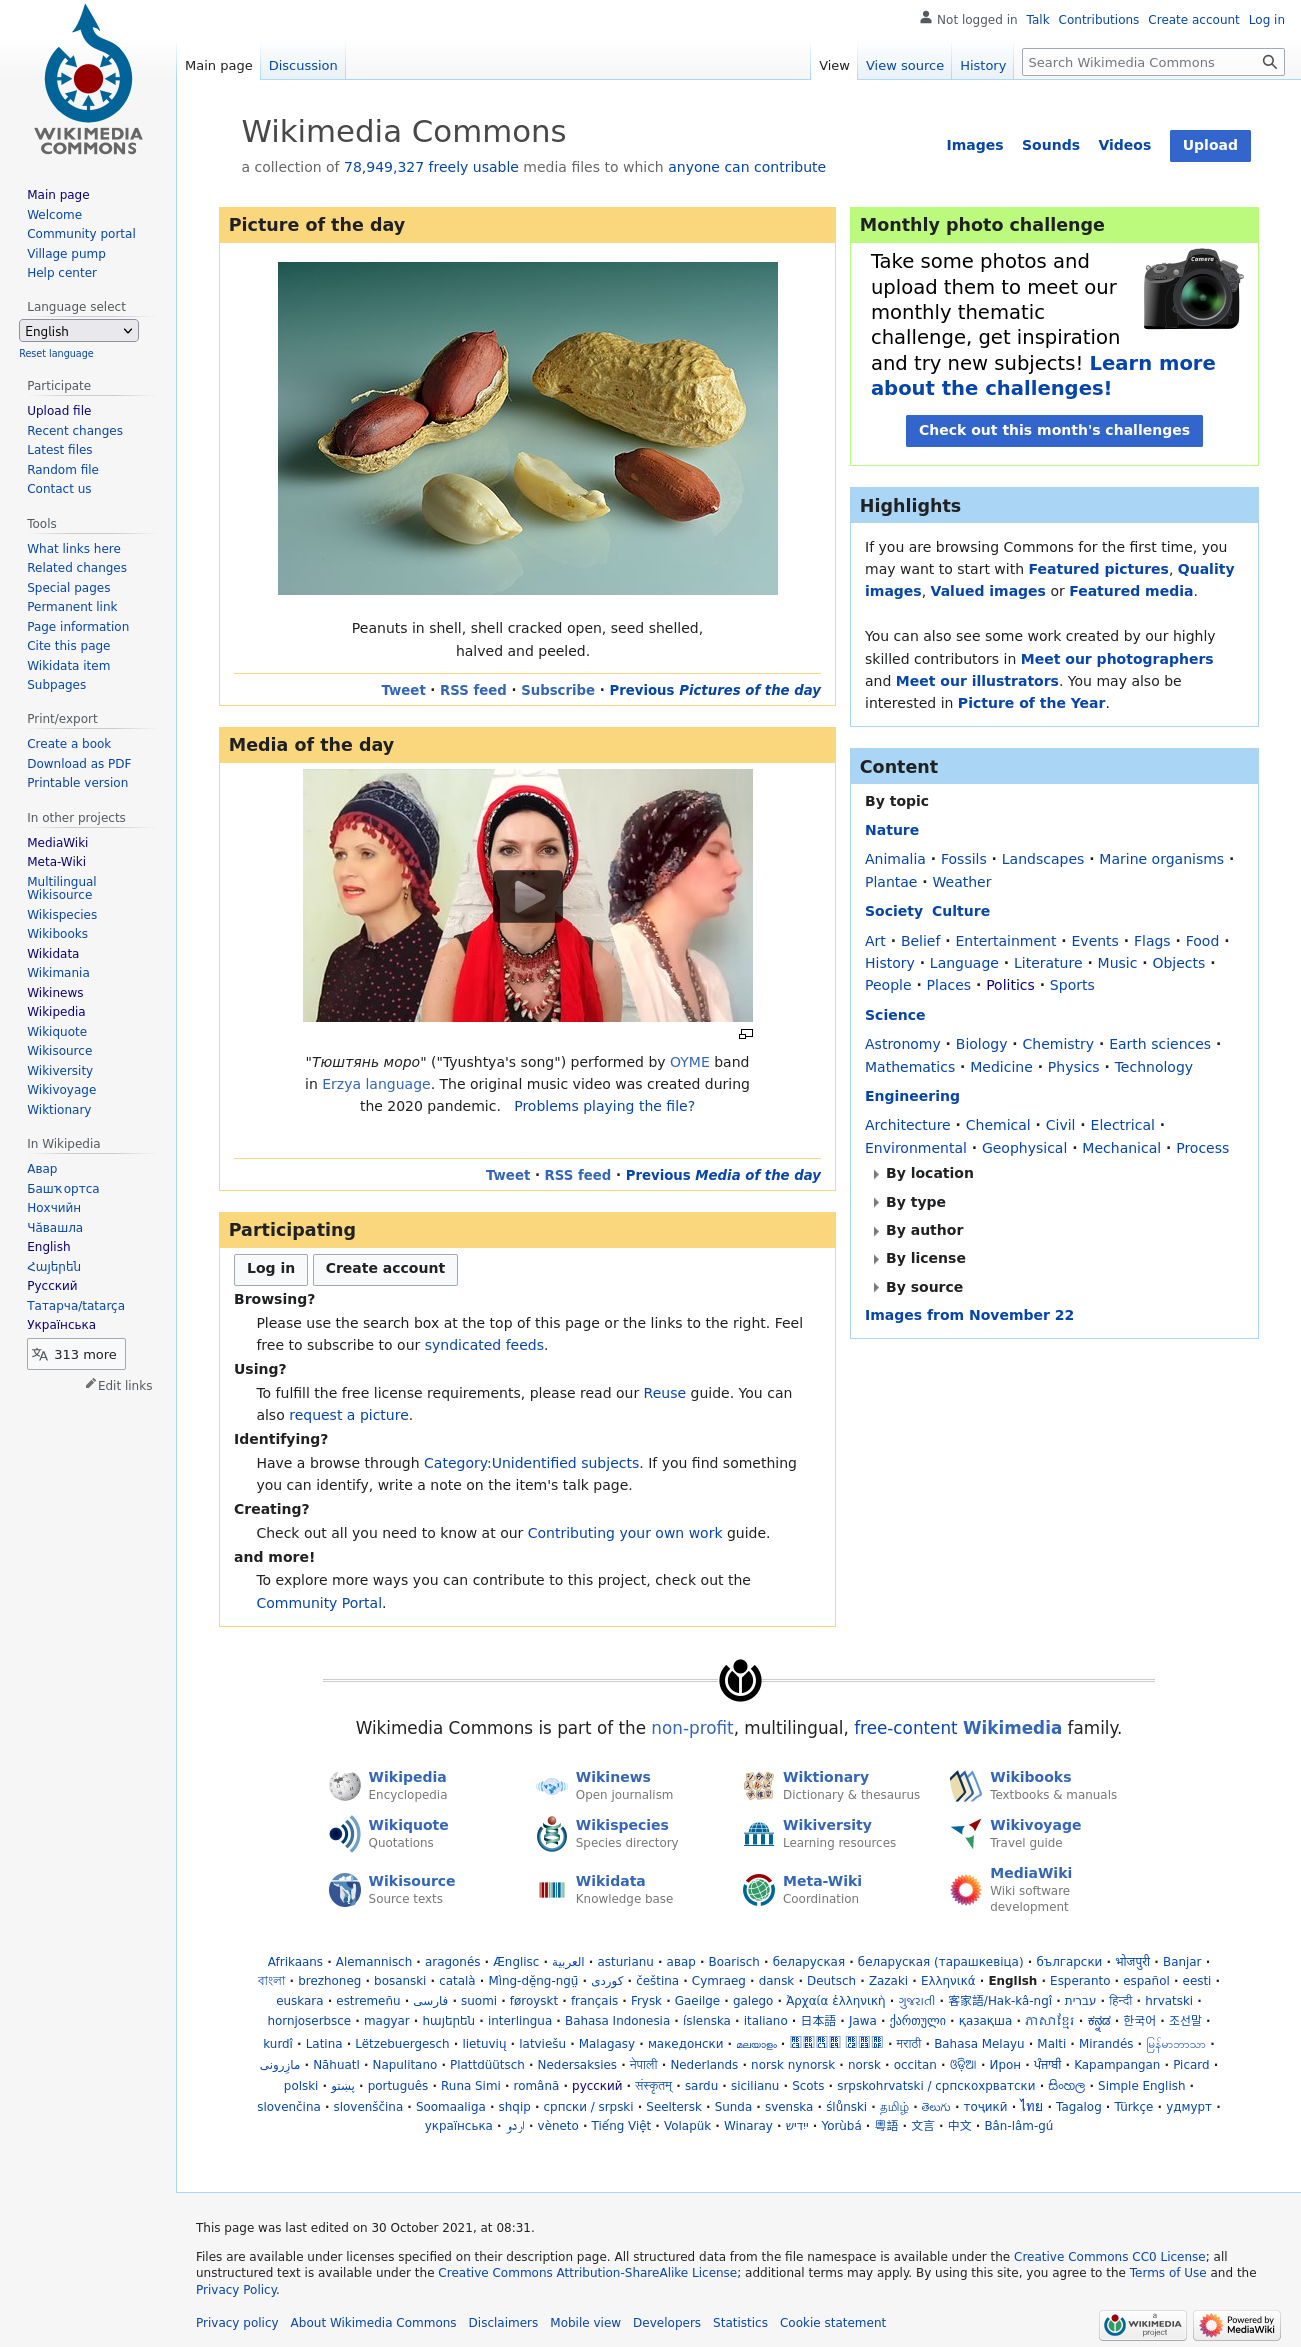 Скриншот заглавной страницы Викисклада 22 ноября 2021 года